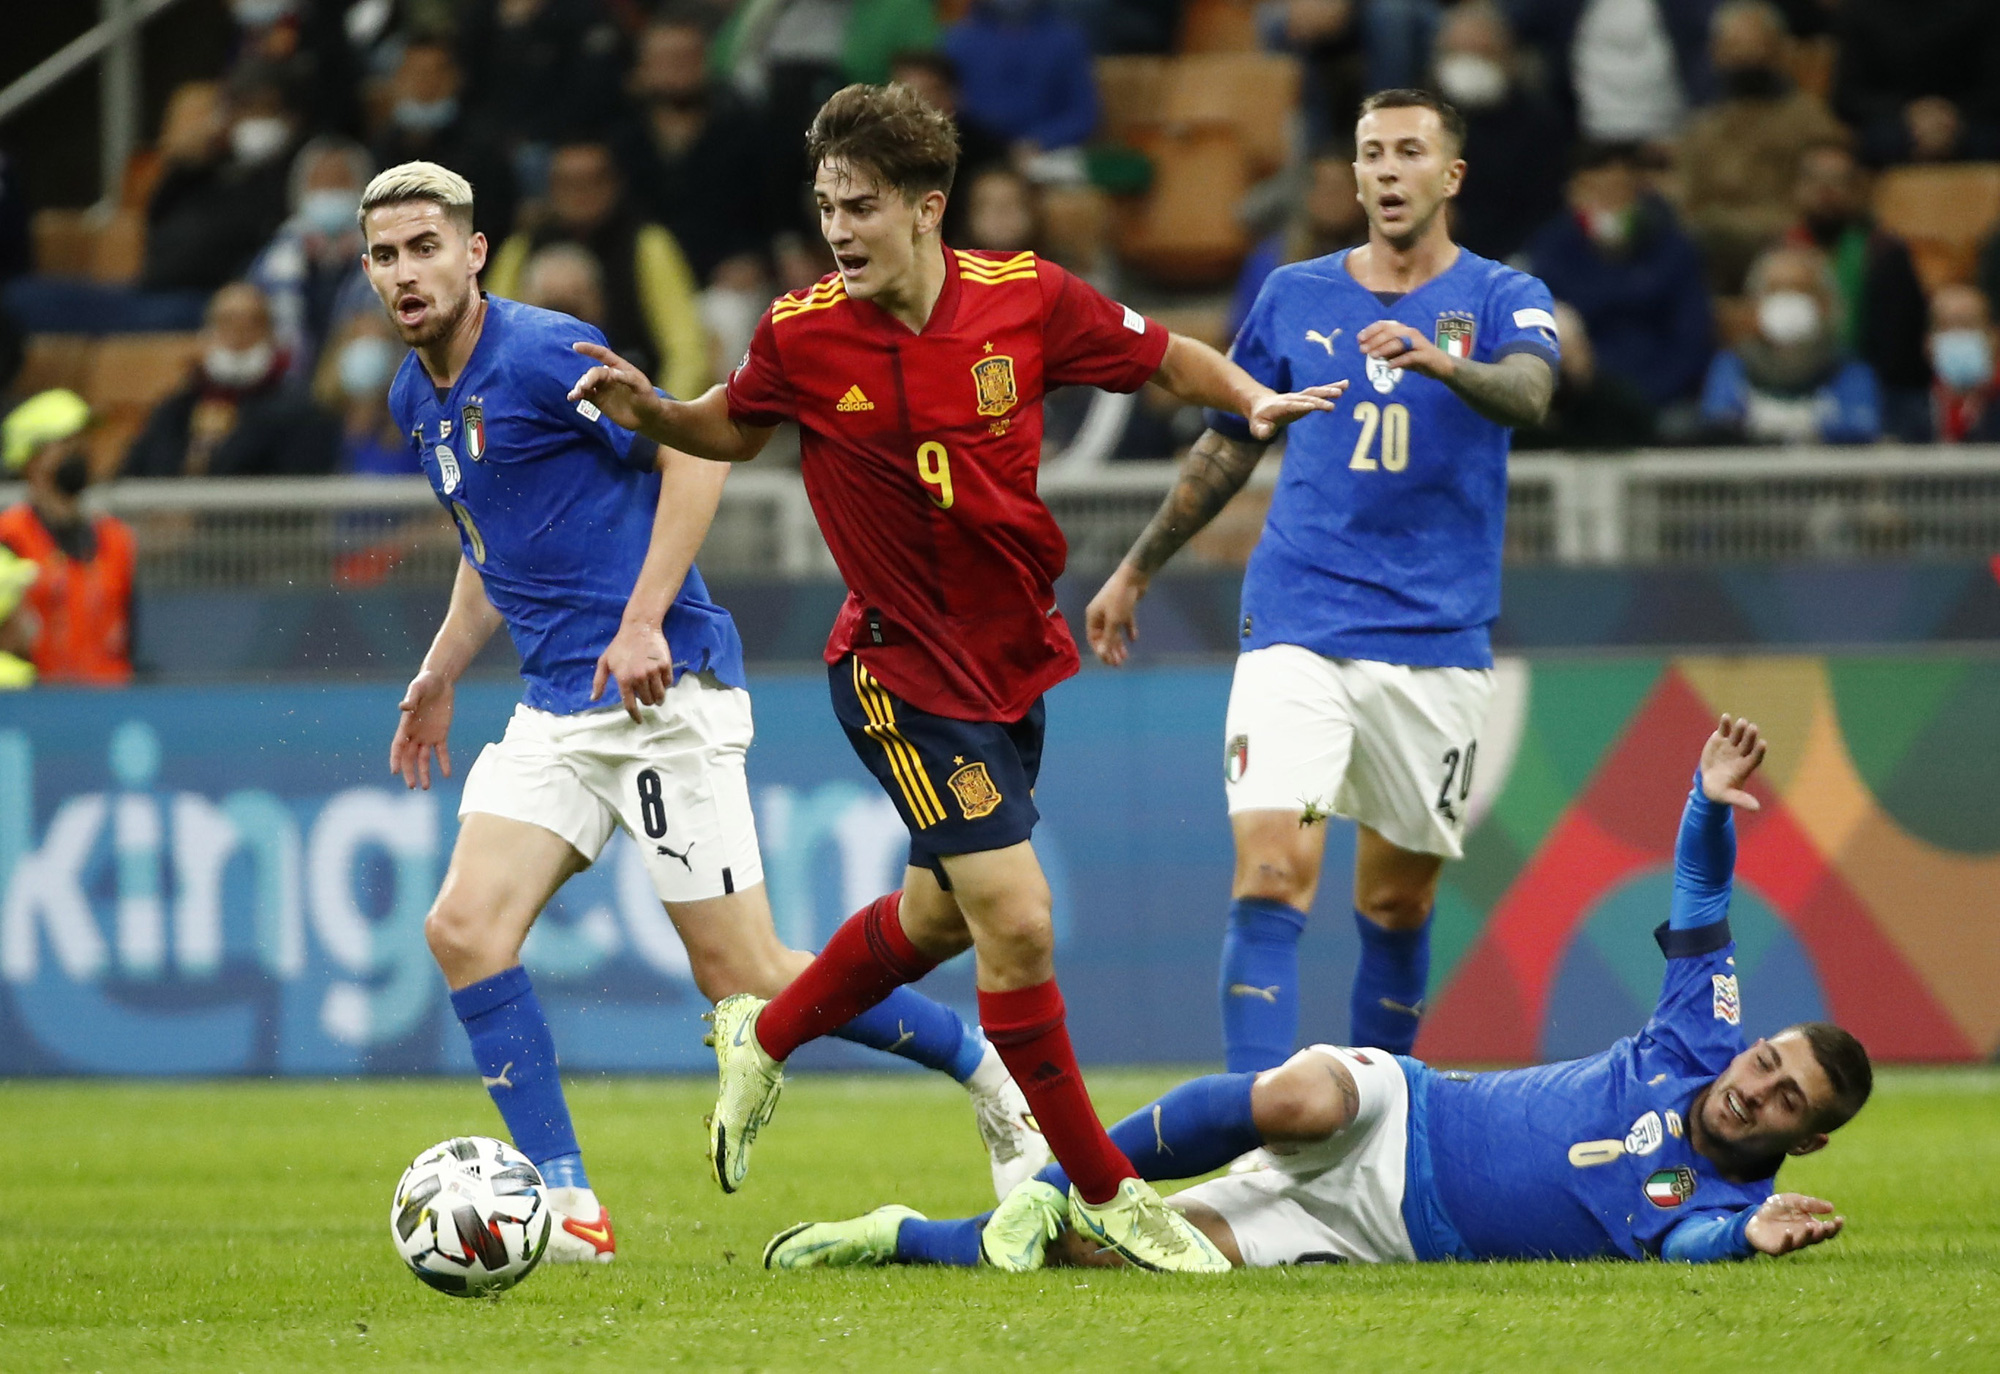 Ý sụp đổ trên sân nhà, Tây Ban Nha tranh chung kết Nations League - Ảnh 2.